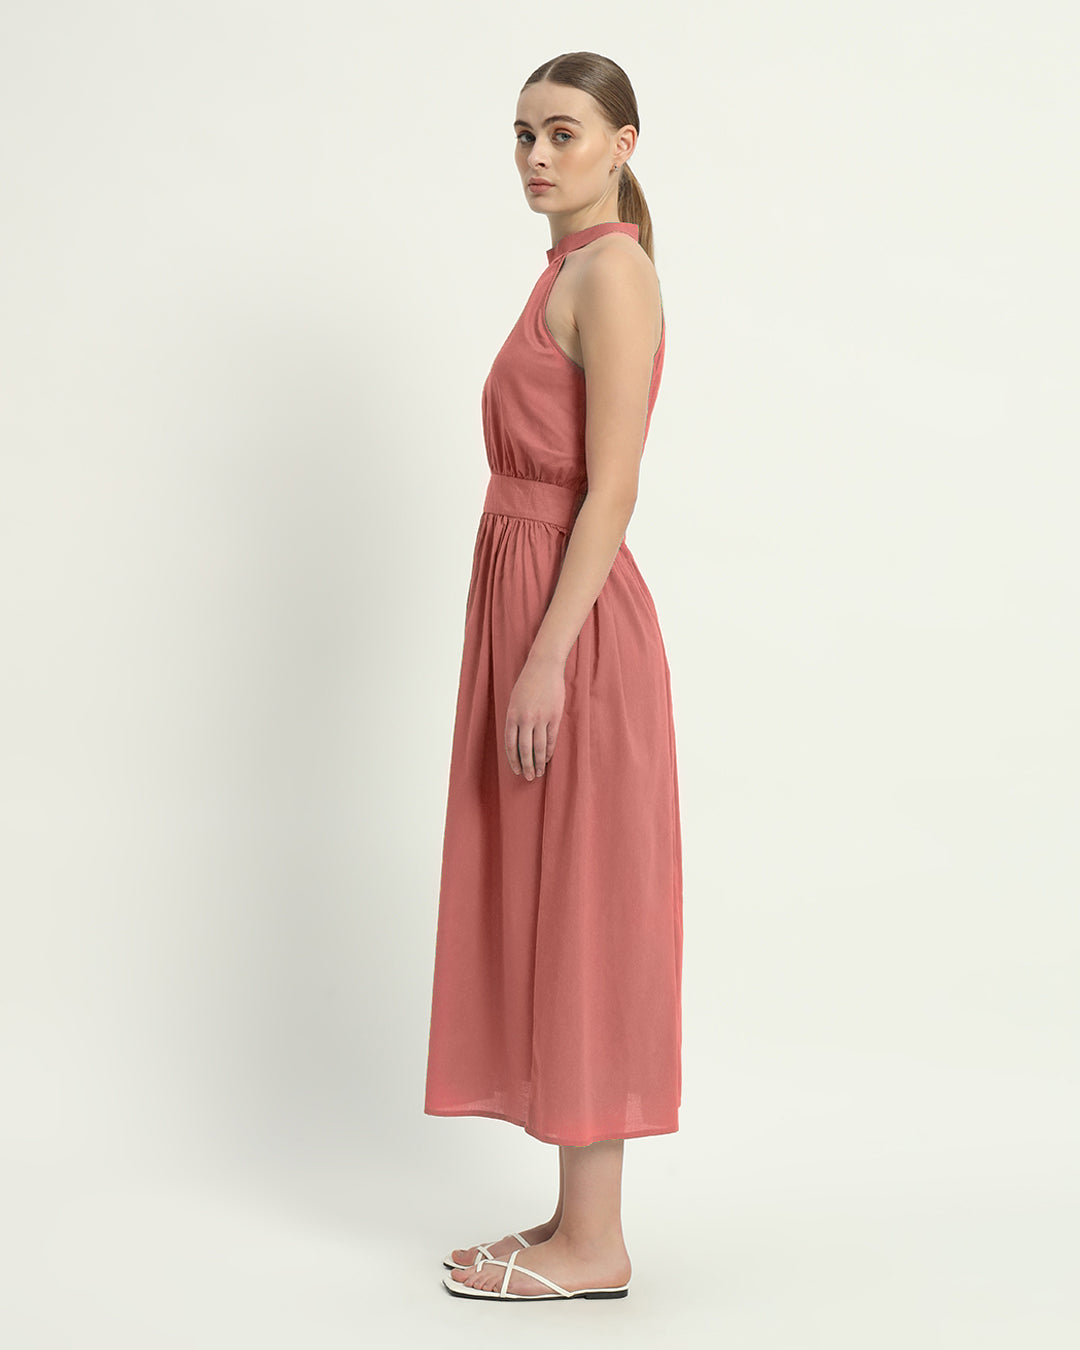 The Massena  Ivory Pink Cotton Dress